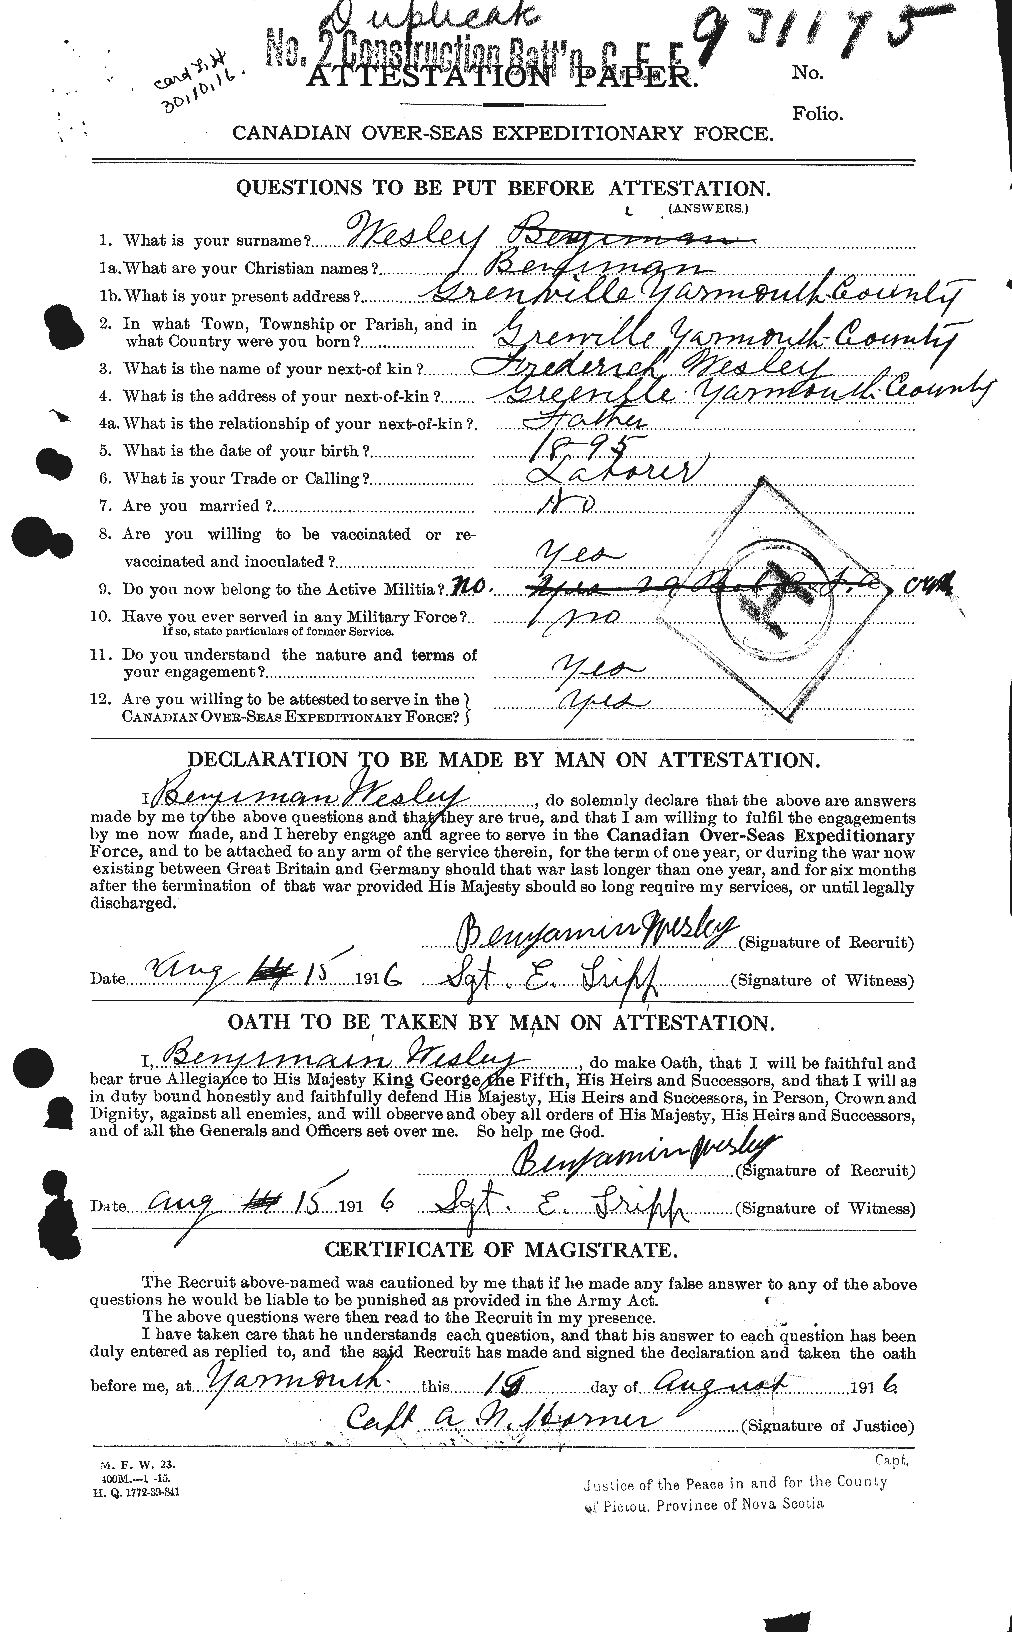 Dossiers du Personnel de la Première Guerre mondiale - CEC 665952a